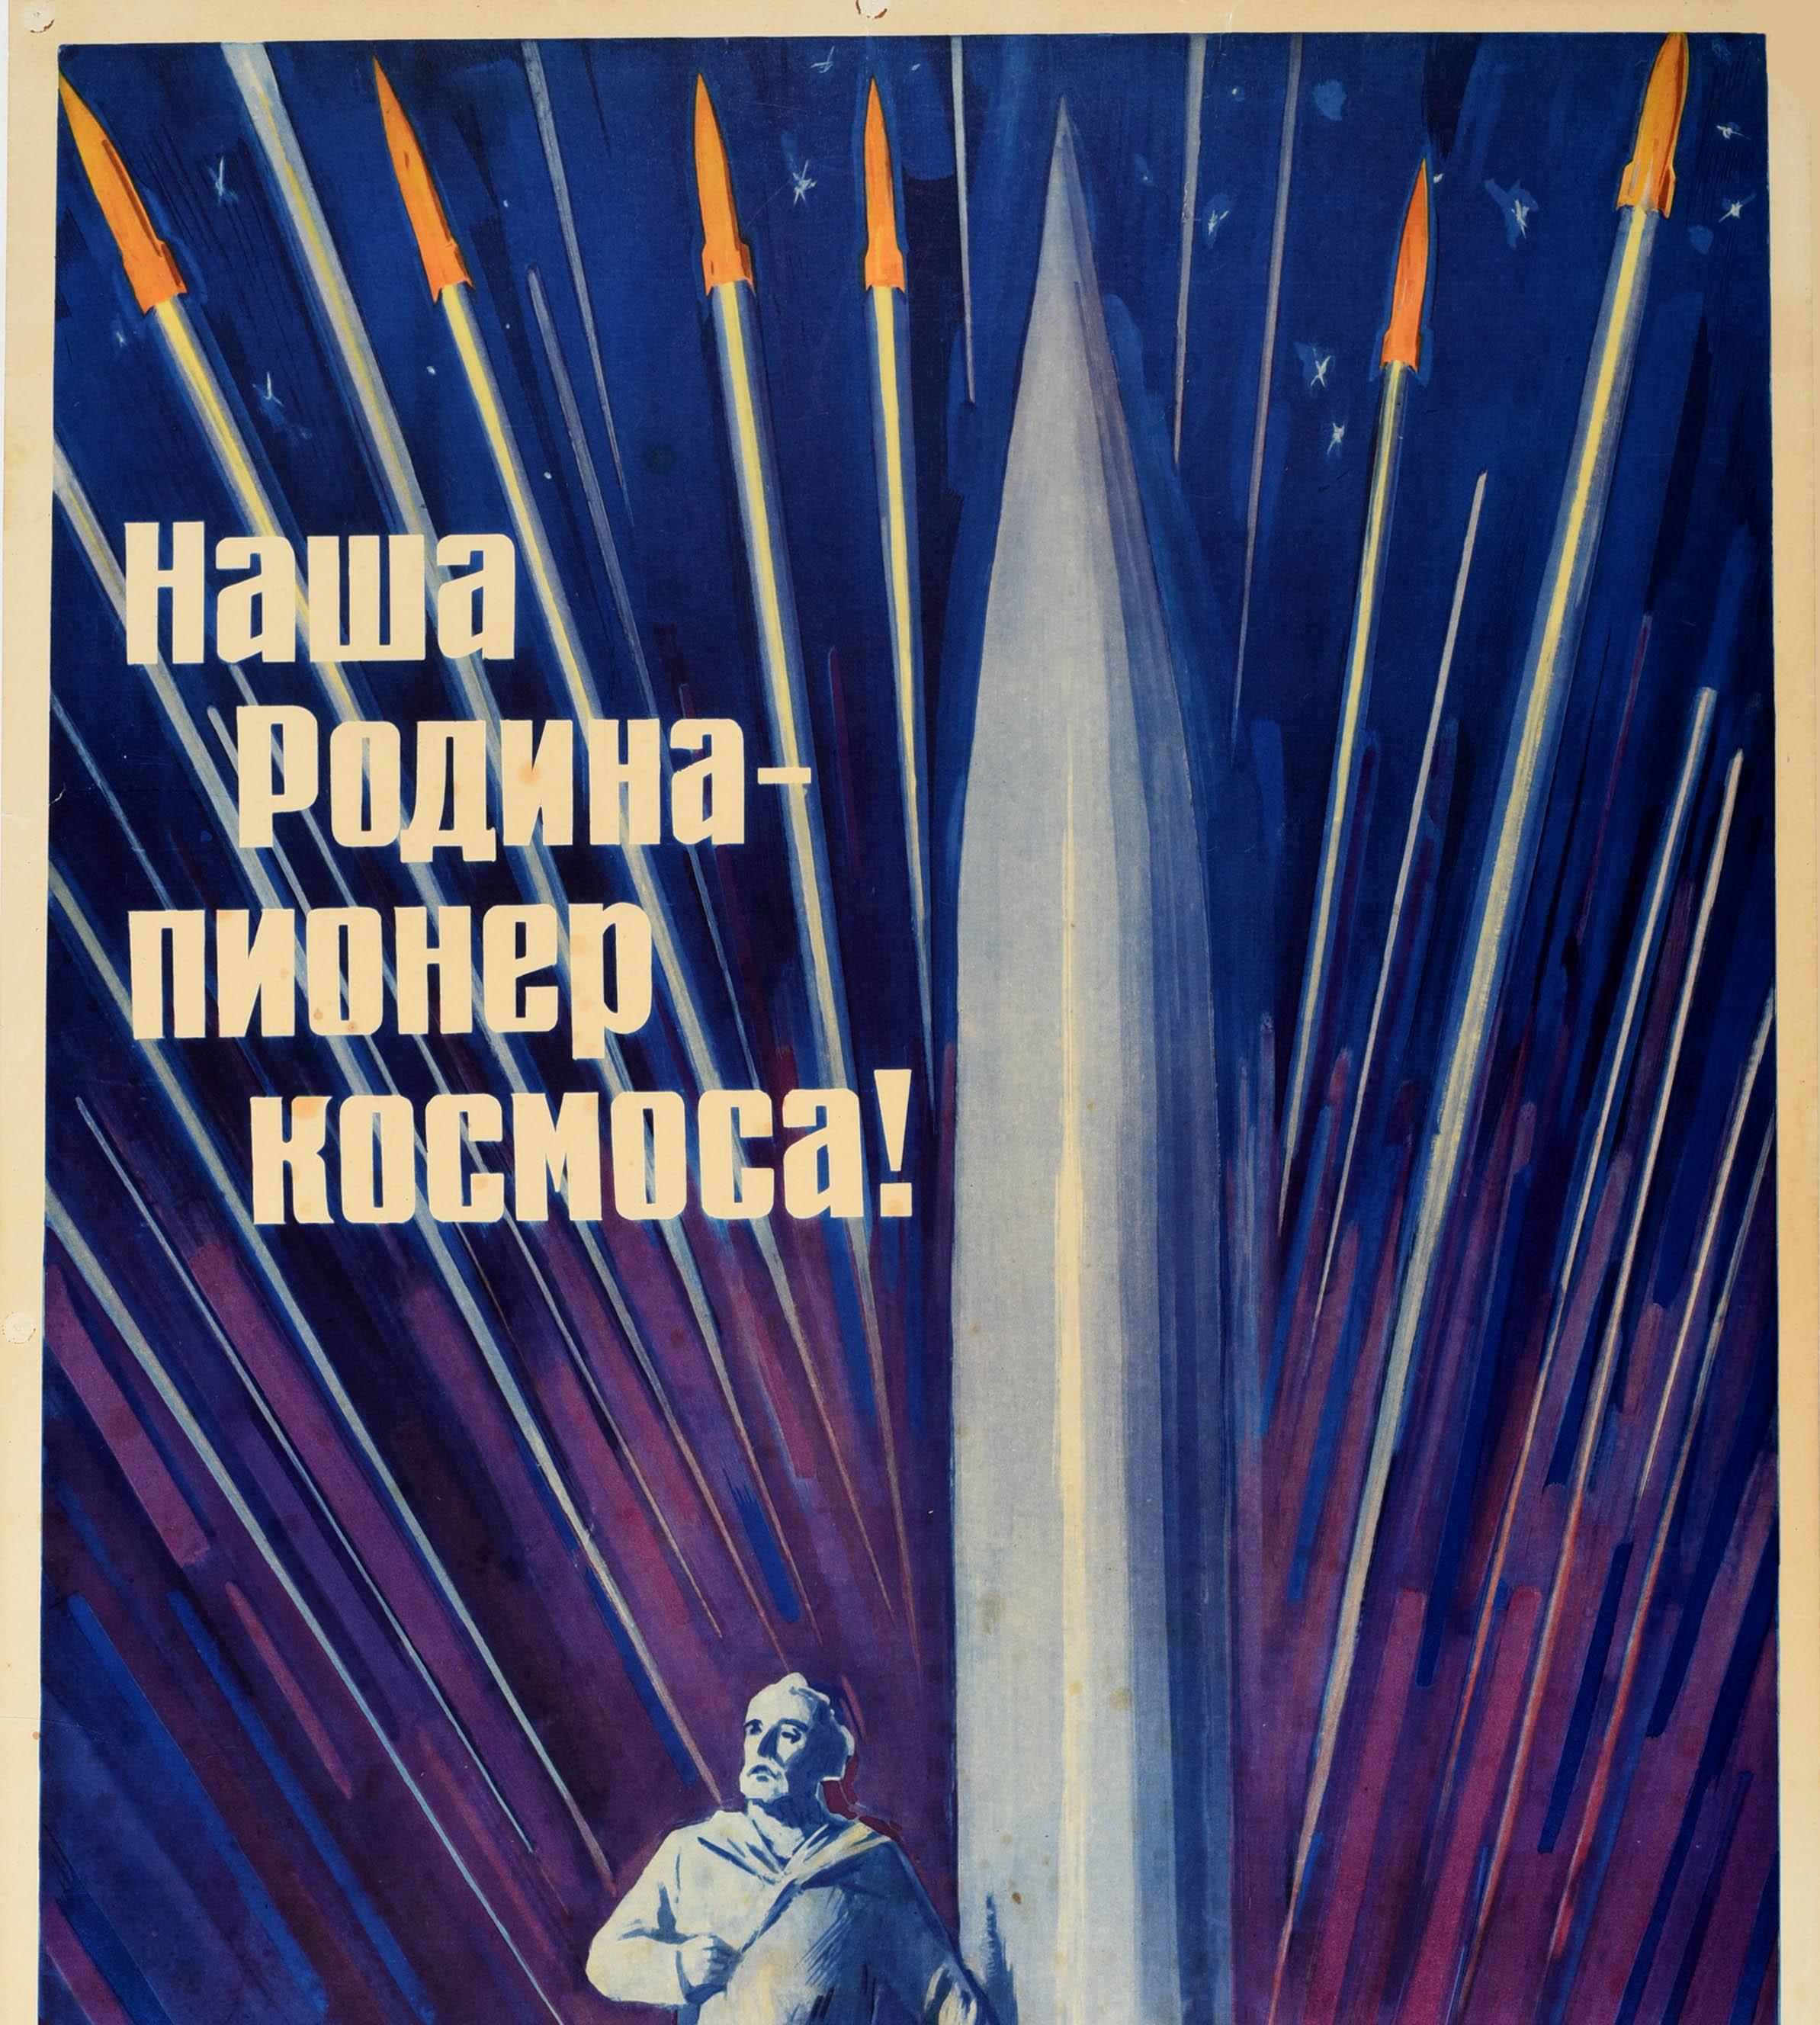 Original sowjetisches Propagandaplakat - Unser Vaterland ist der Pionier des Weltraums! / Наша Родина Пионер Космоса! Dynamisches Design mit einem lächelnden Juri Gagarin (Juri Aleksejewitsch Gagarin; 1934-1968), dem sowjetischen Piloten und